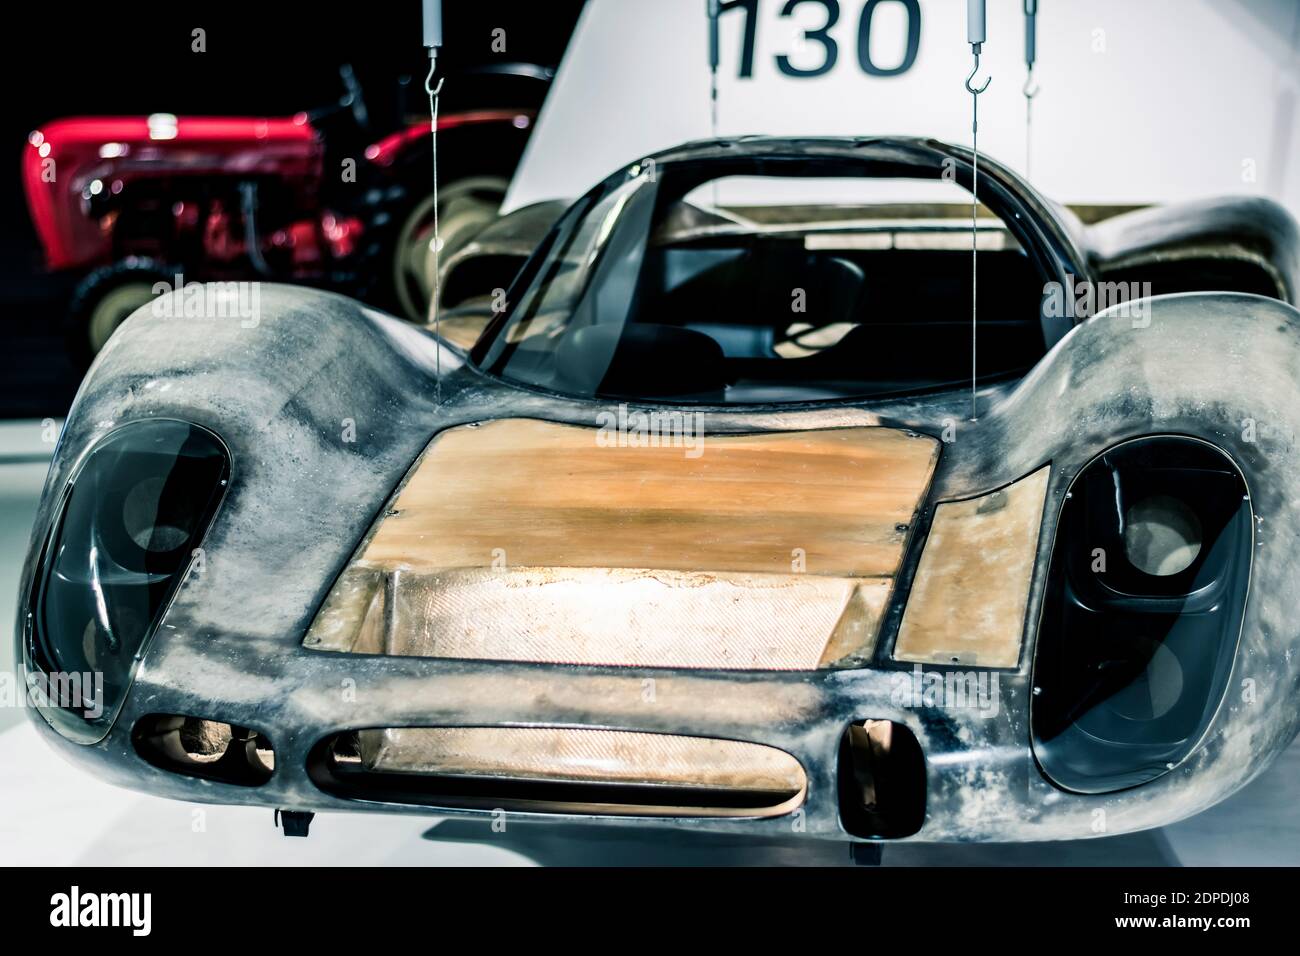 STUTTGART, Allemagne 6 mars 2020 : la Porsche 908 est une voiture de course de Porsche, introduite en 1968 Banque D'Images